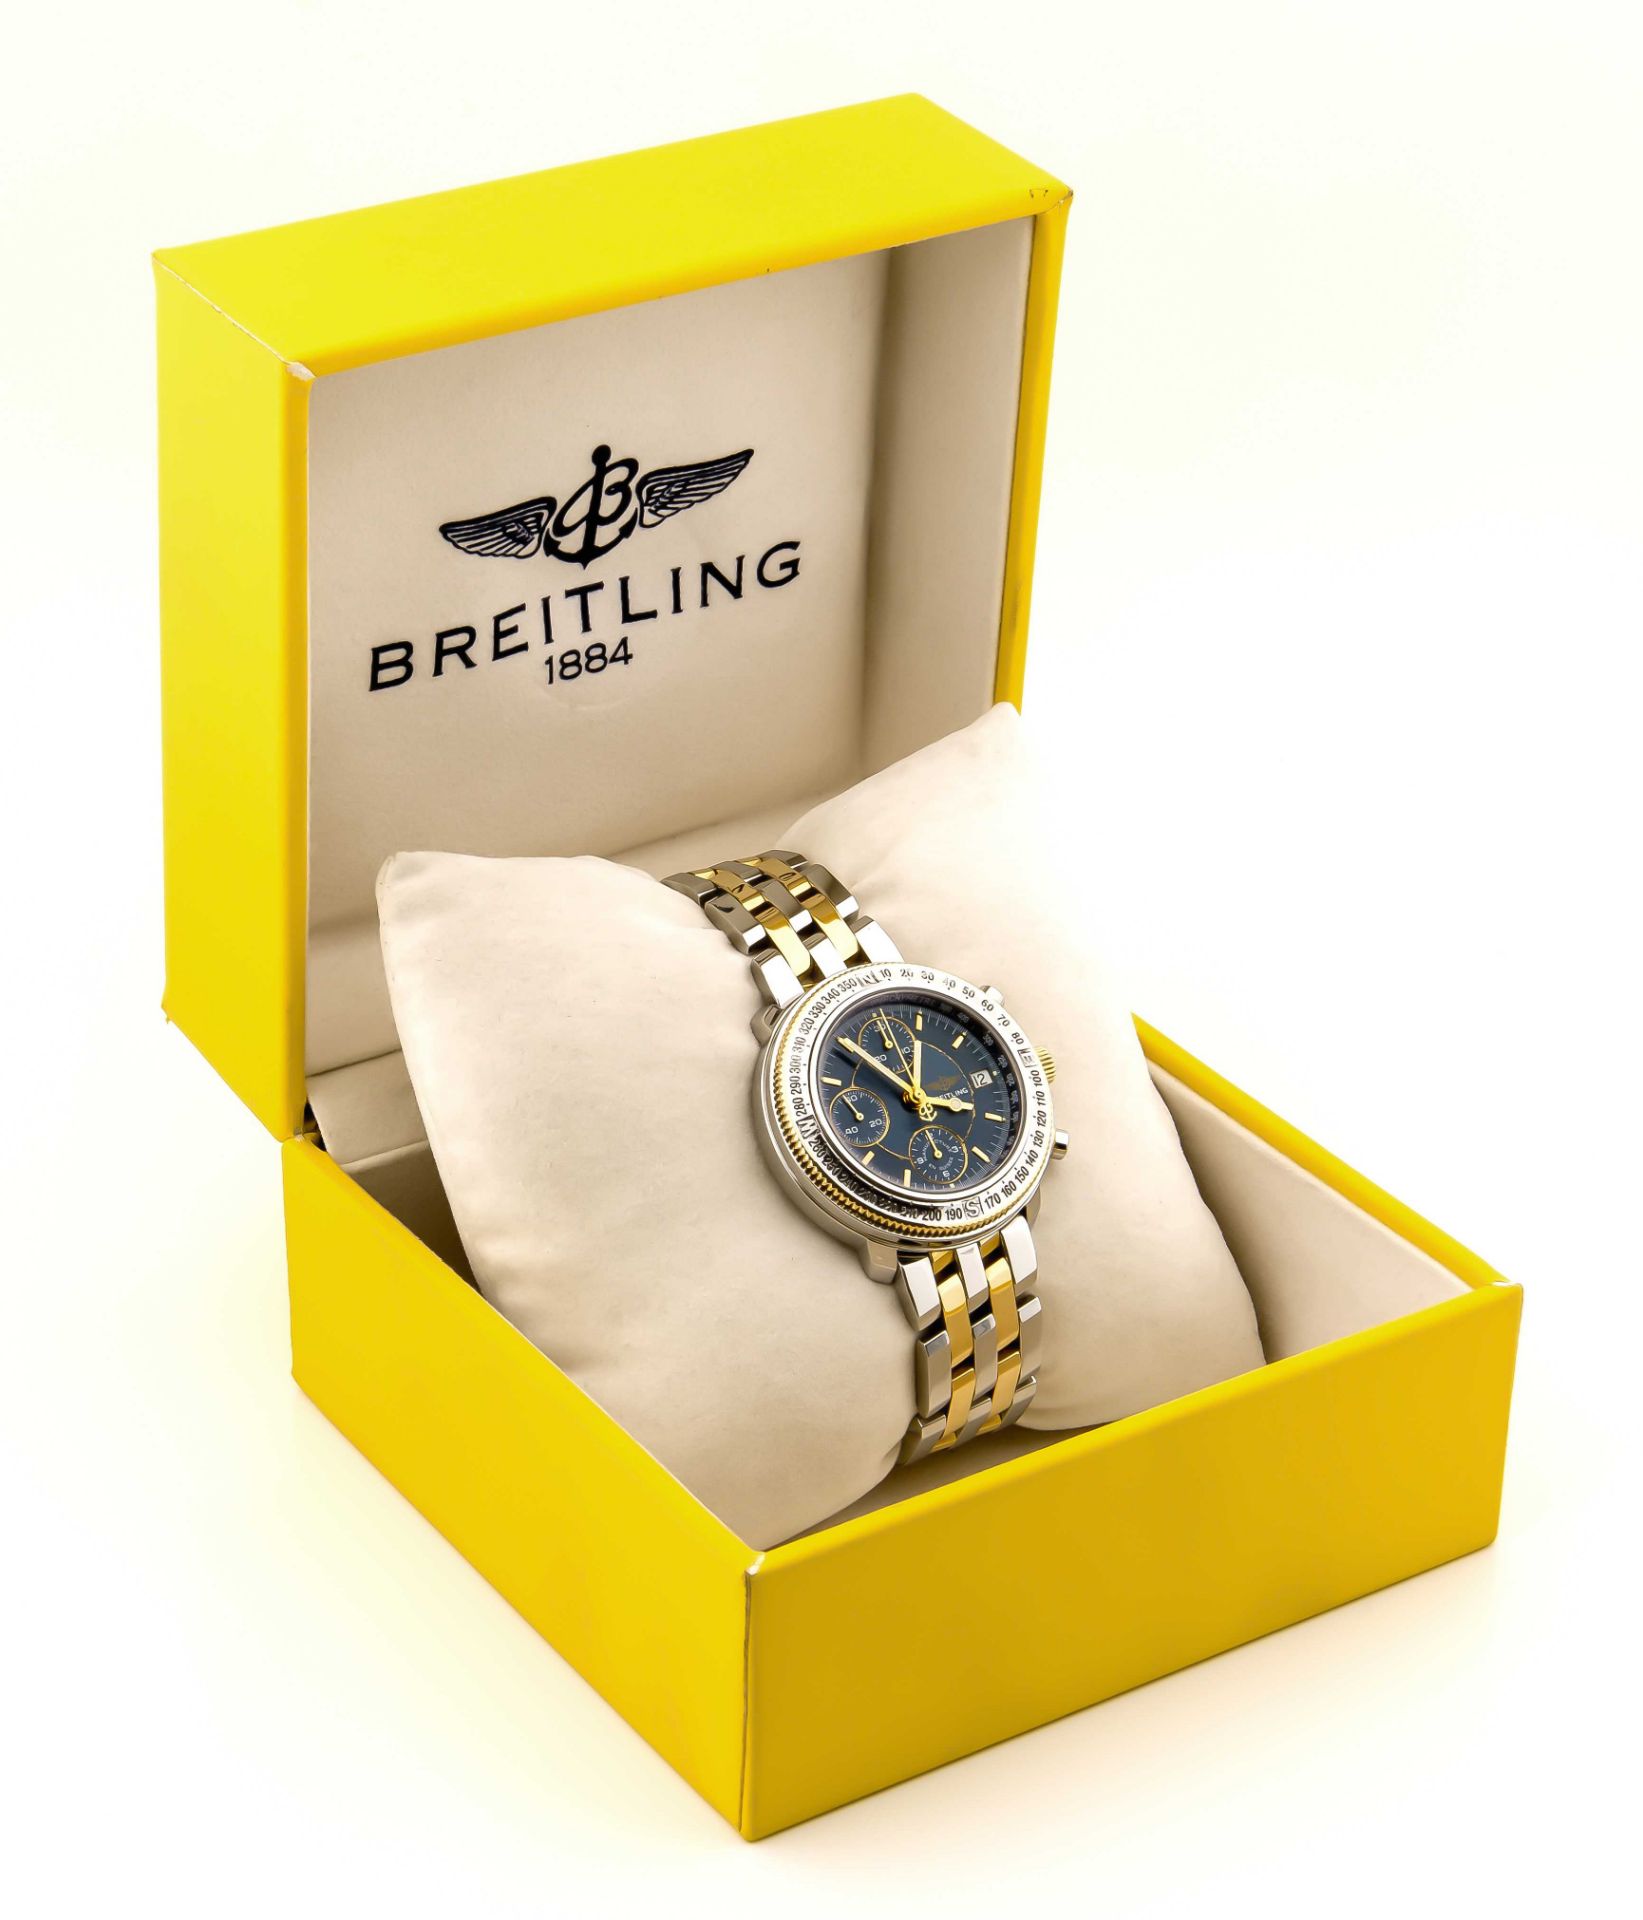 Breitling Herrenarmbanduhr Chrono-Astromat Longitude Stahl/Gold 750/000 Automatik mitDatum, Sekunde, - Image 4 of 6